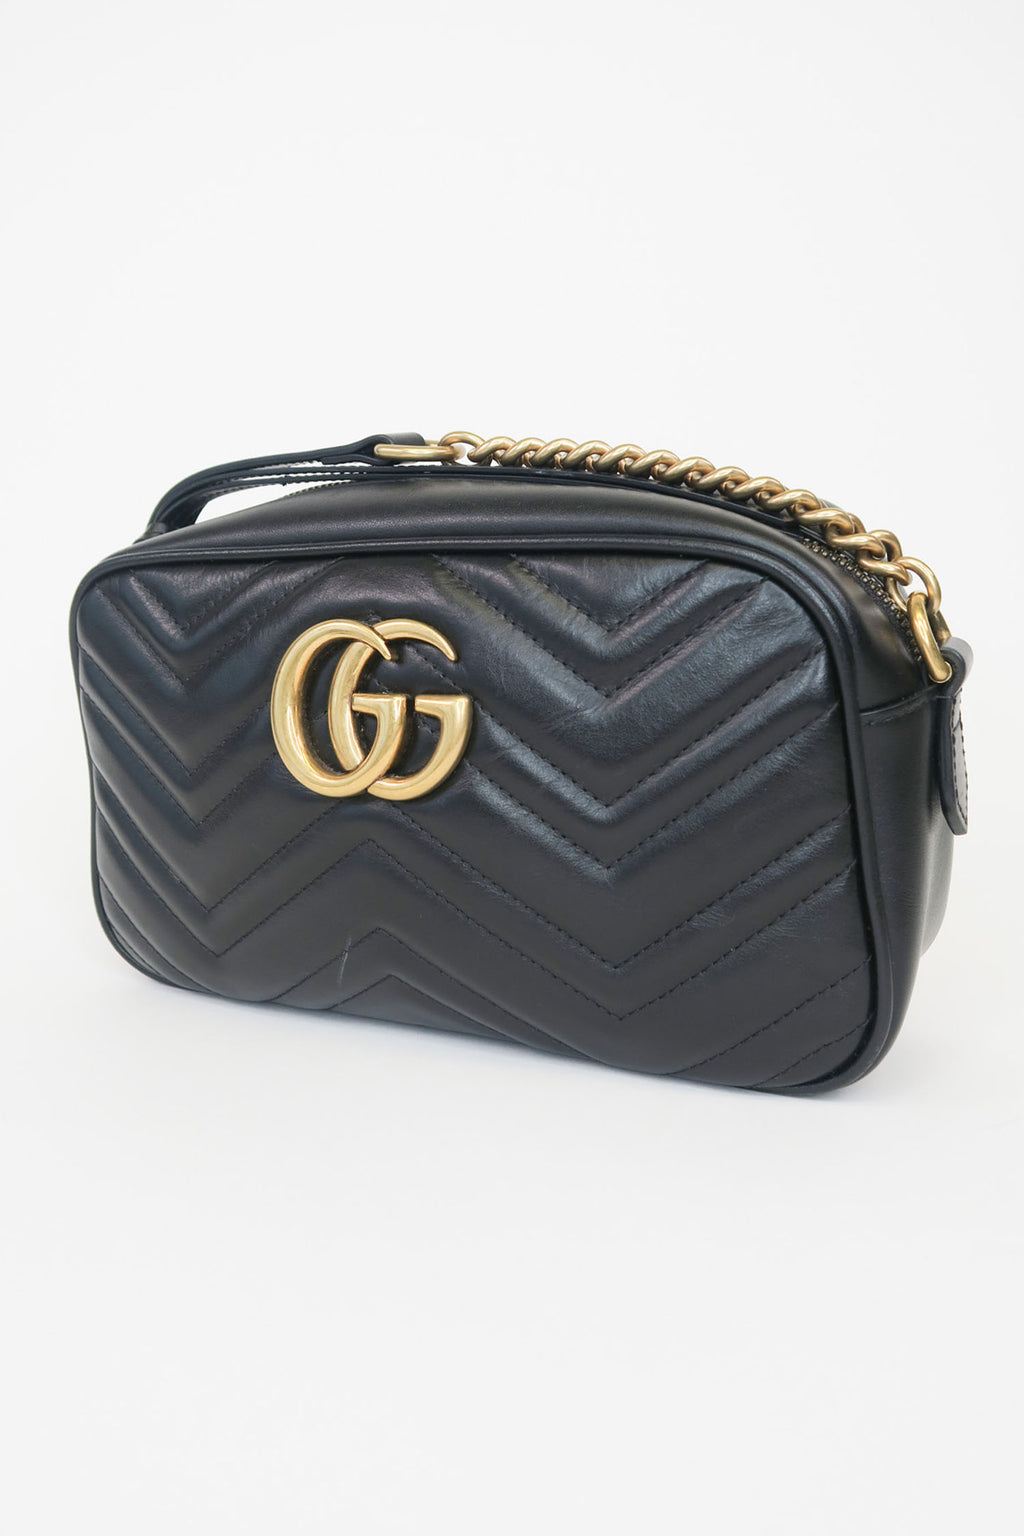 Gucci Small Marmont Camera Bag